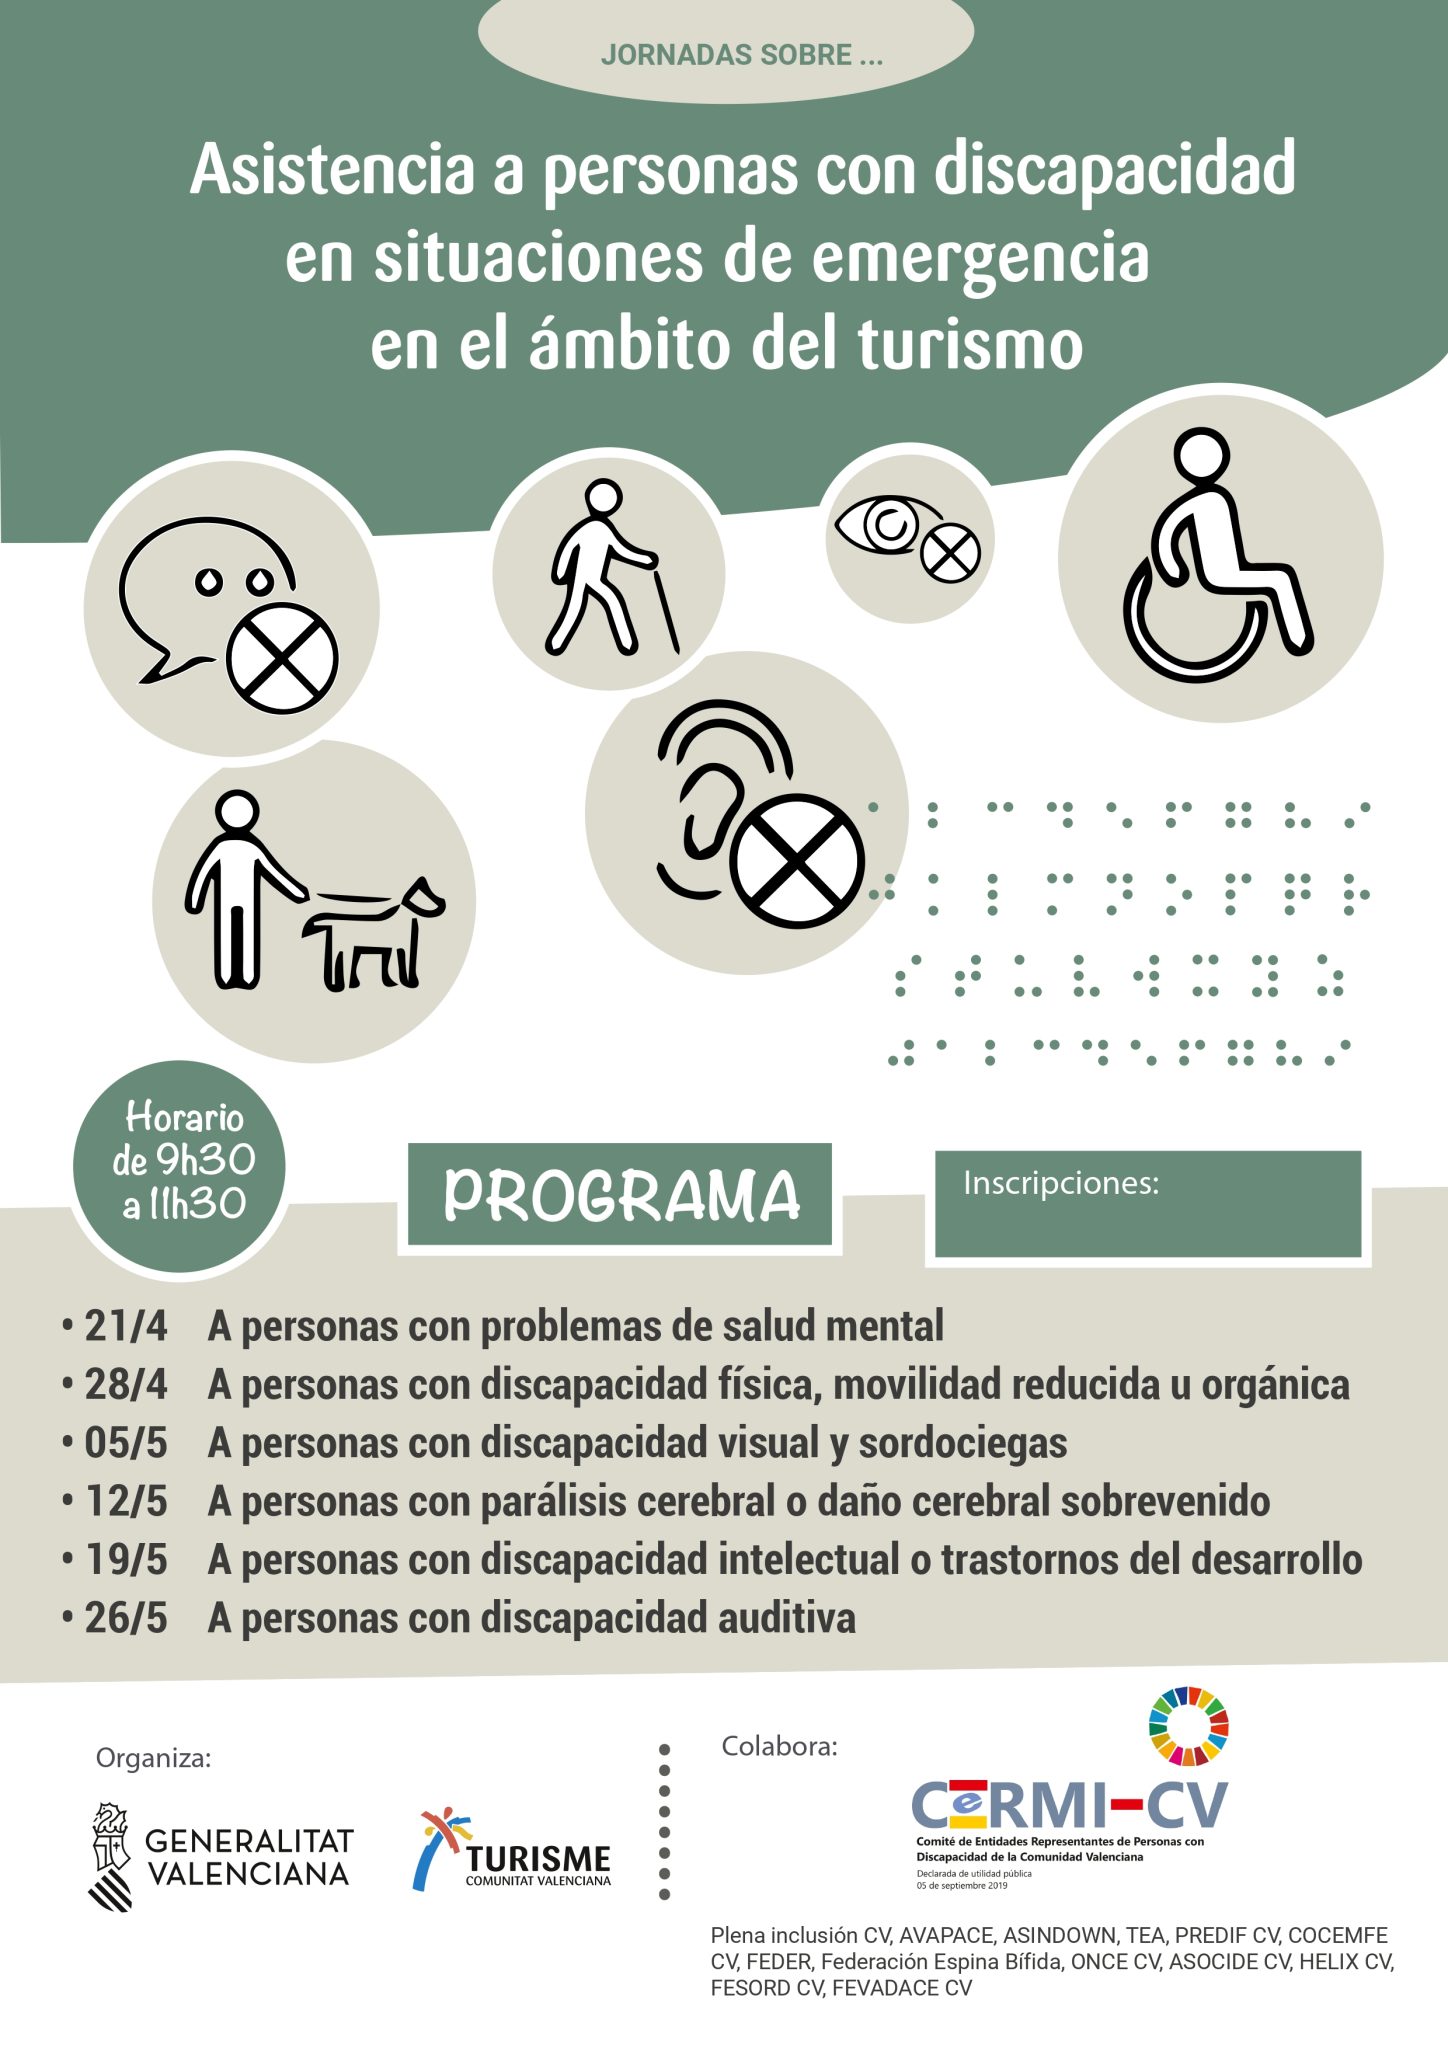 La Concejalía de Turismo anima a los empresarios a ampliar su formación en asistencia a la discapacidad en el turismo